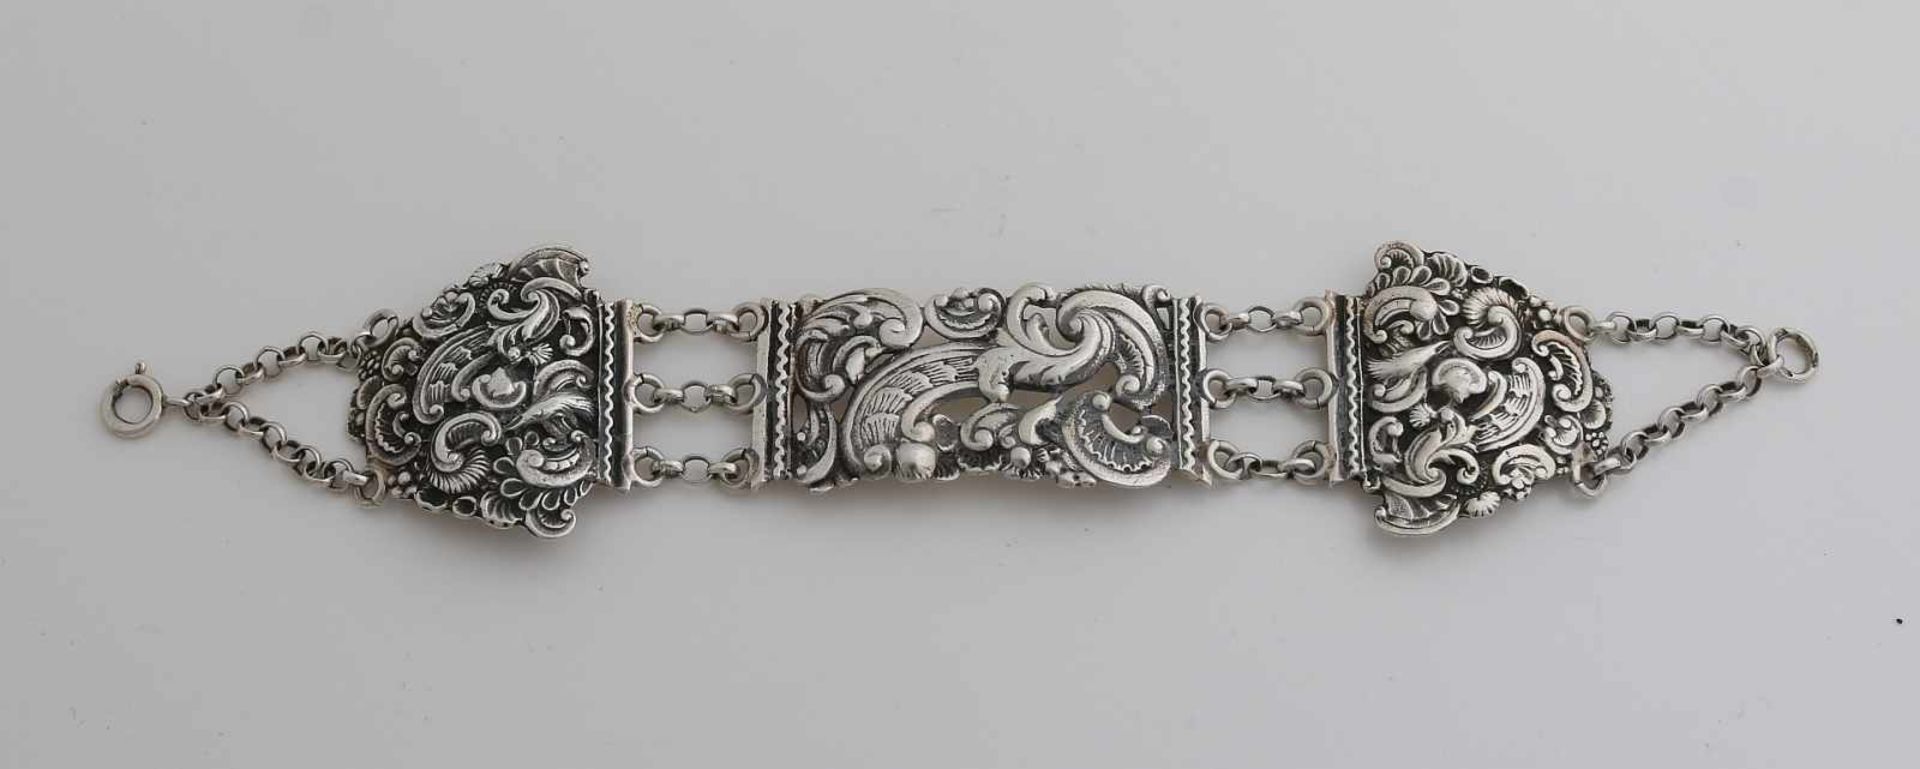 Silberarmband aus einem antiken Bibelverschluss, 833/000, verziert mit Schriftrollen und Blumen.